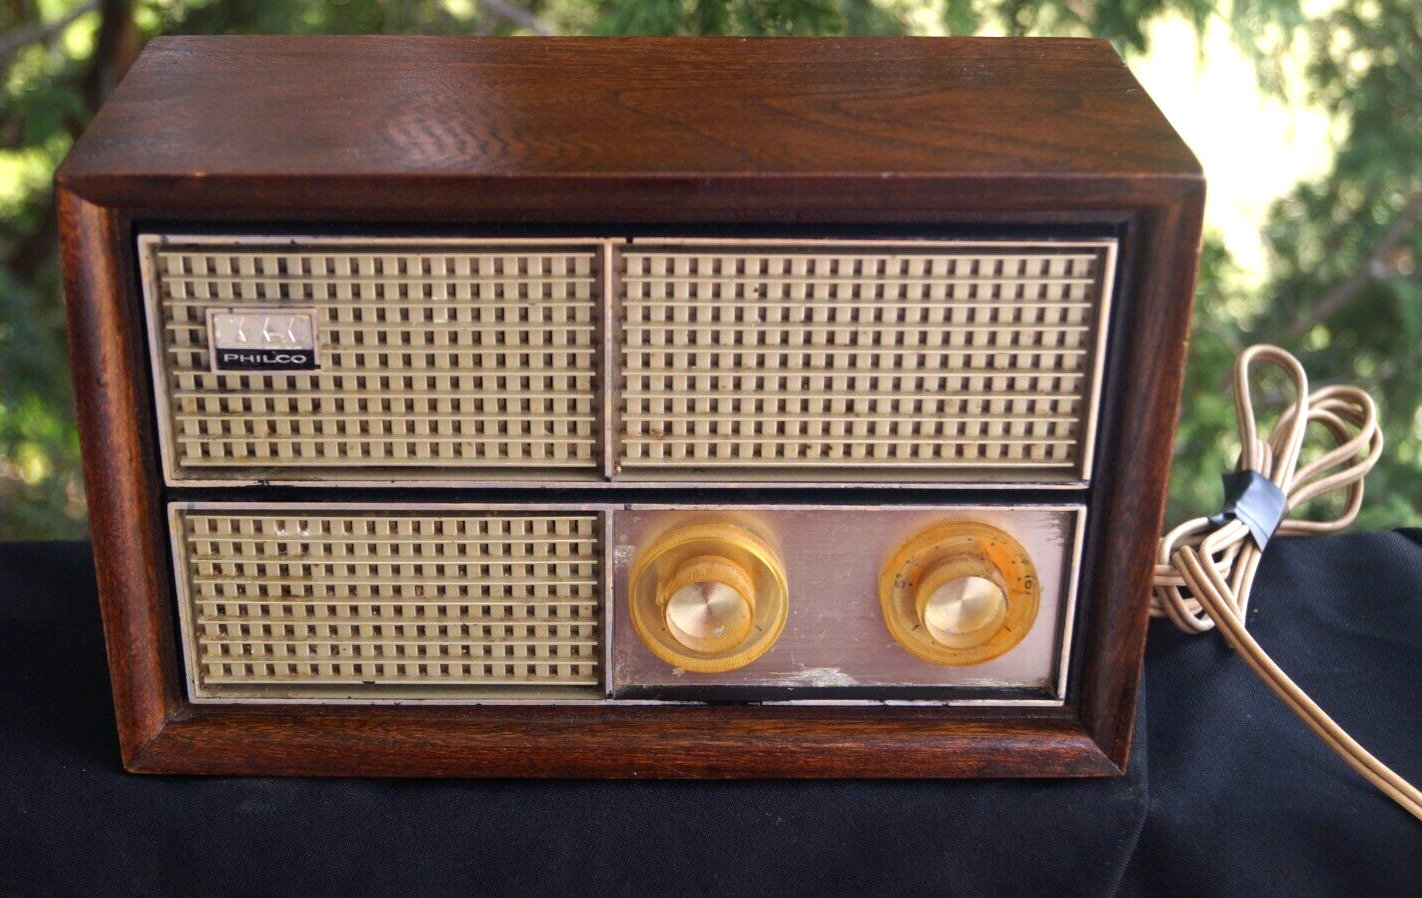 Antique 1962 Philco Model 1000 C Tube Radio - BC AC - Works Great - Wood Case